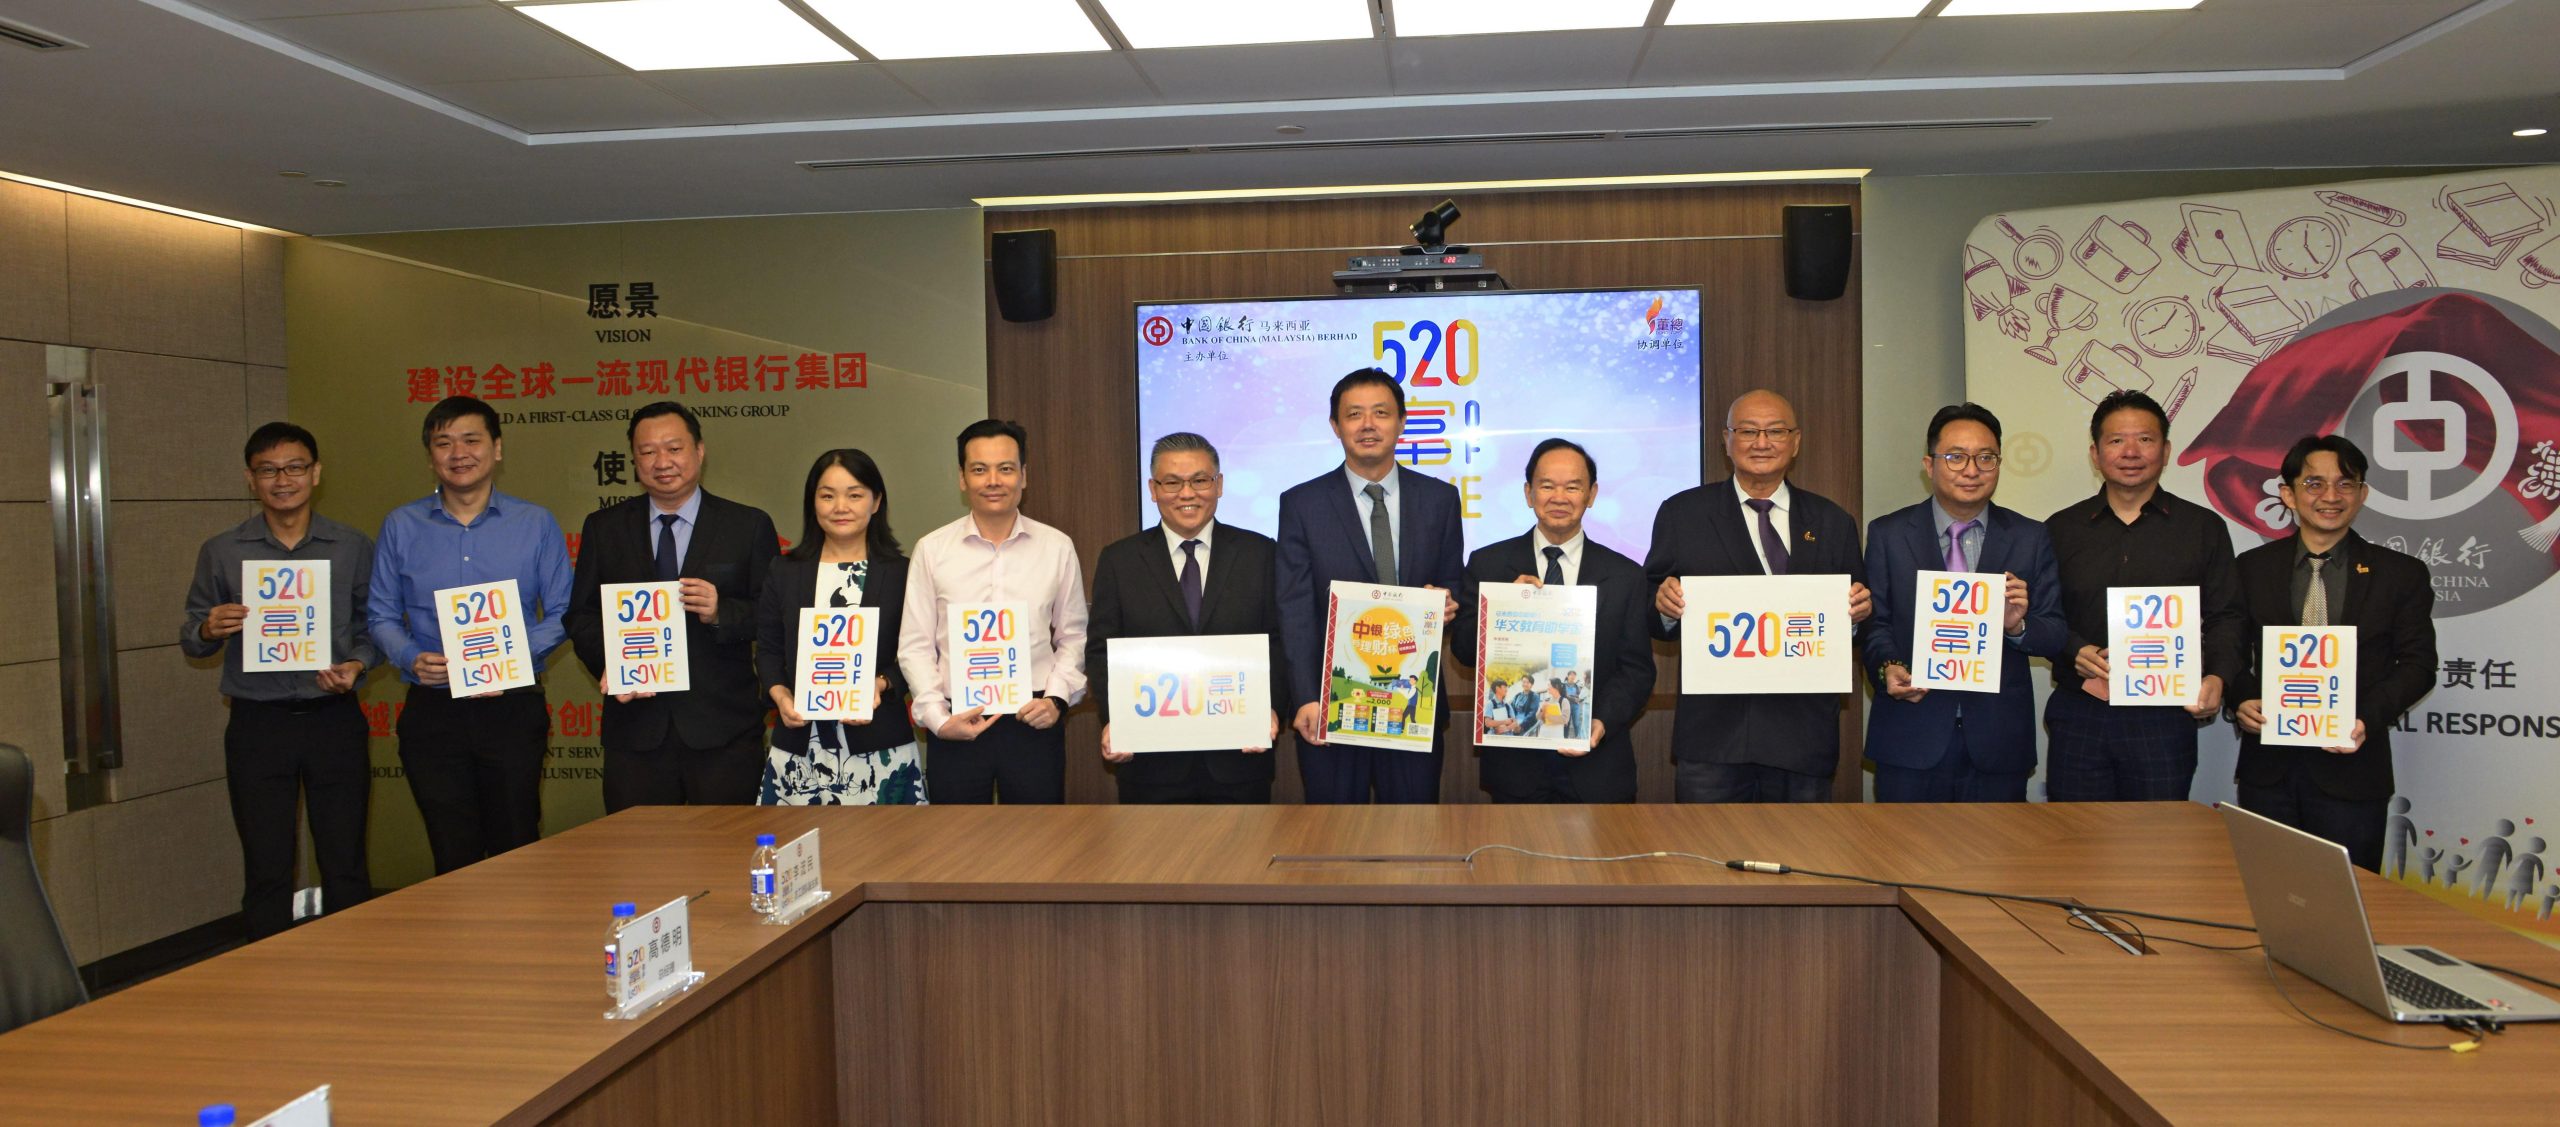 马来西亚中国银行及董总推出“中国银行华文教育助学金”